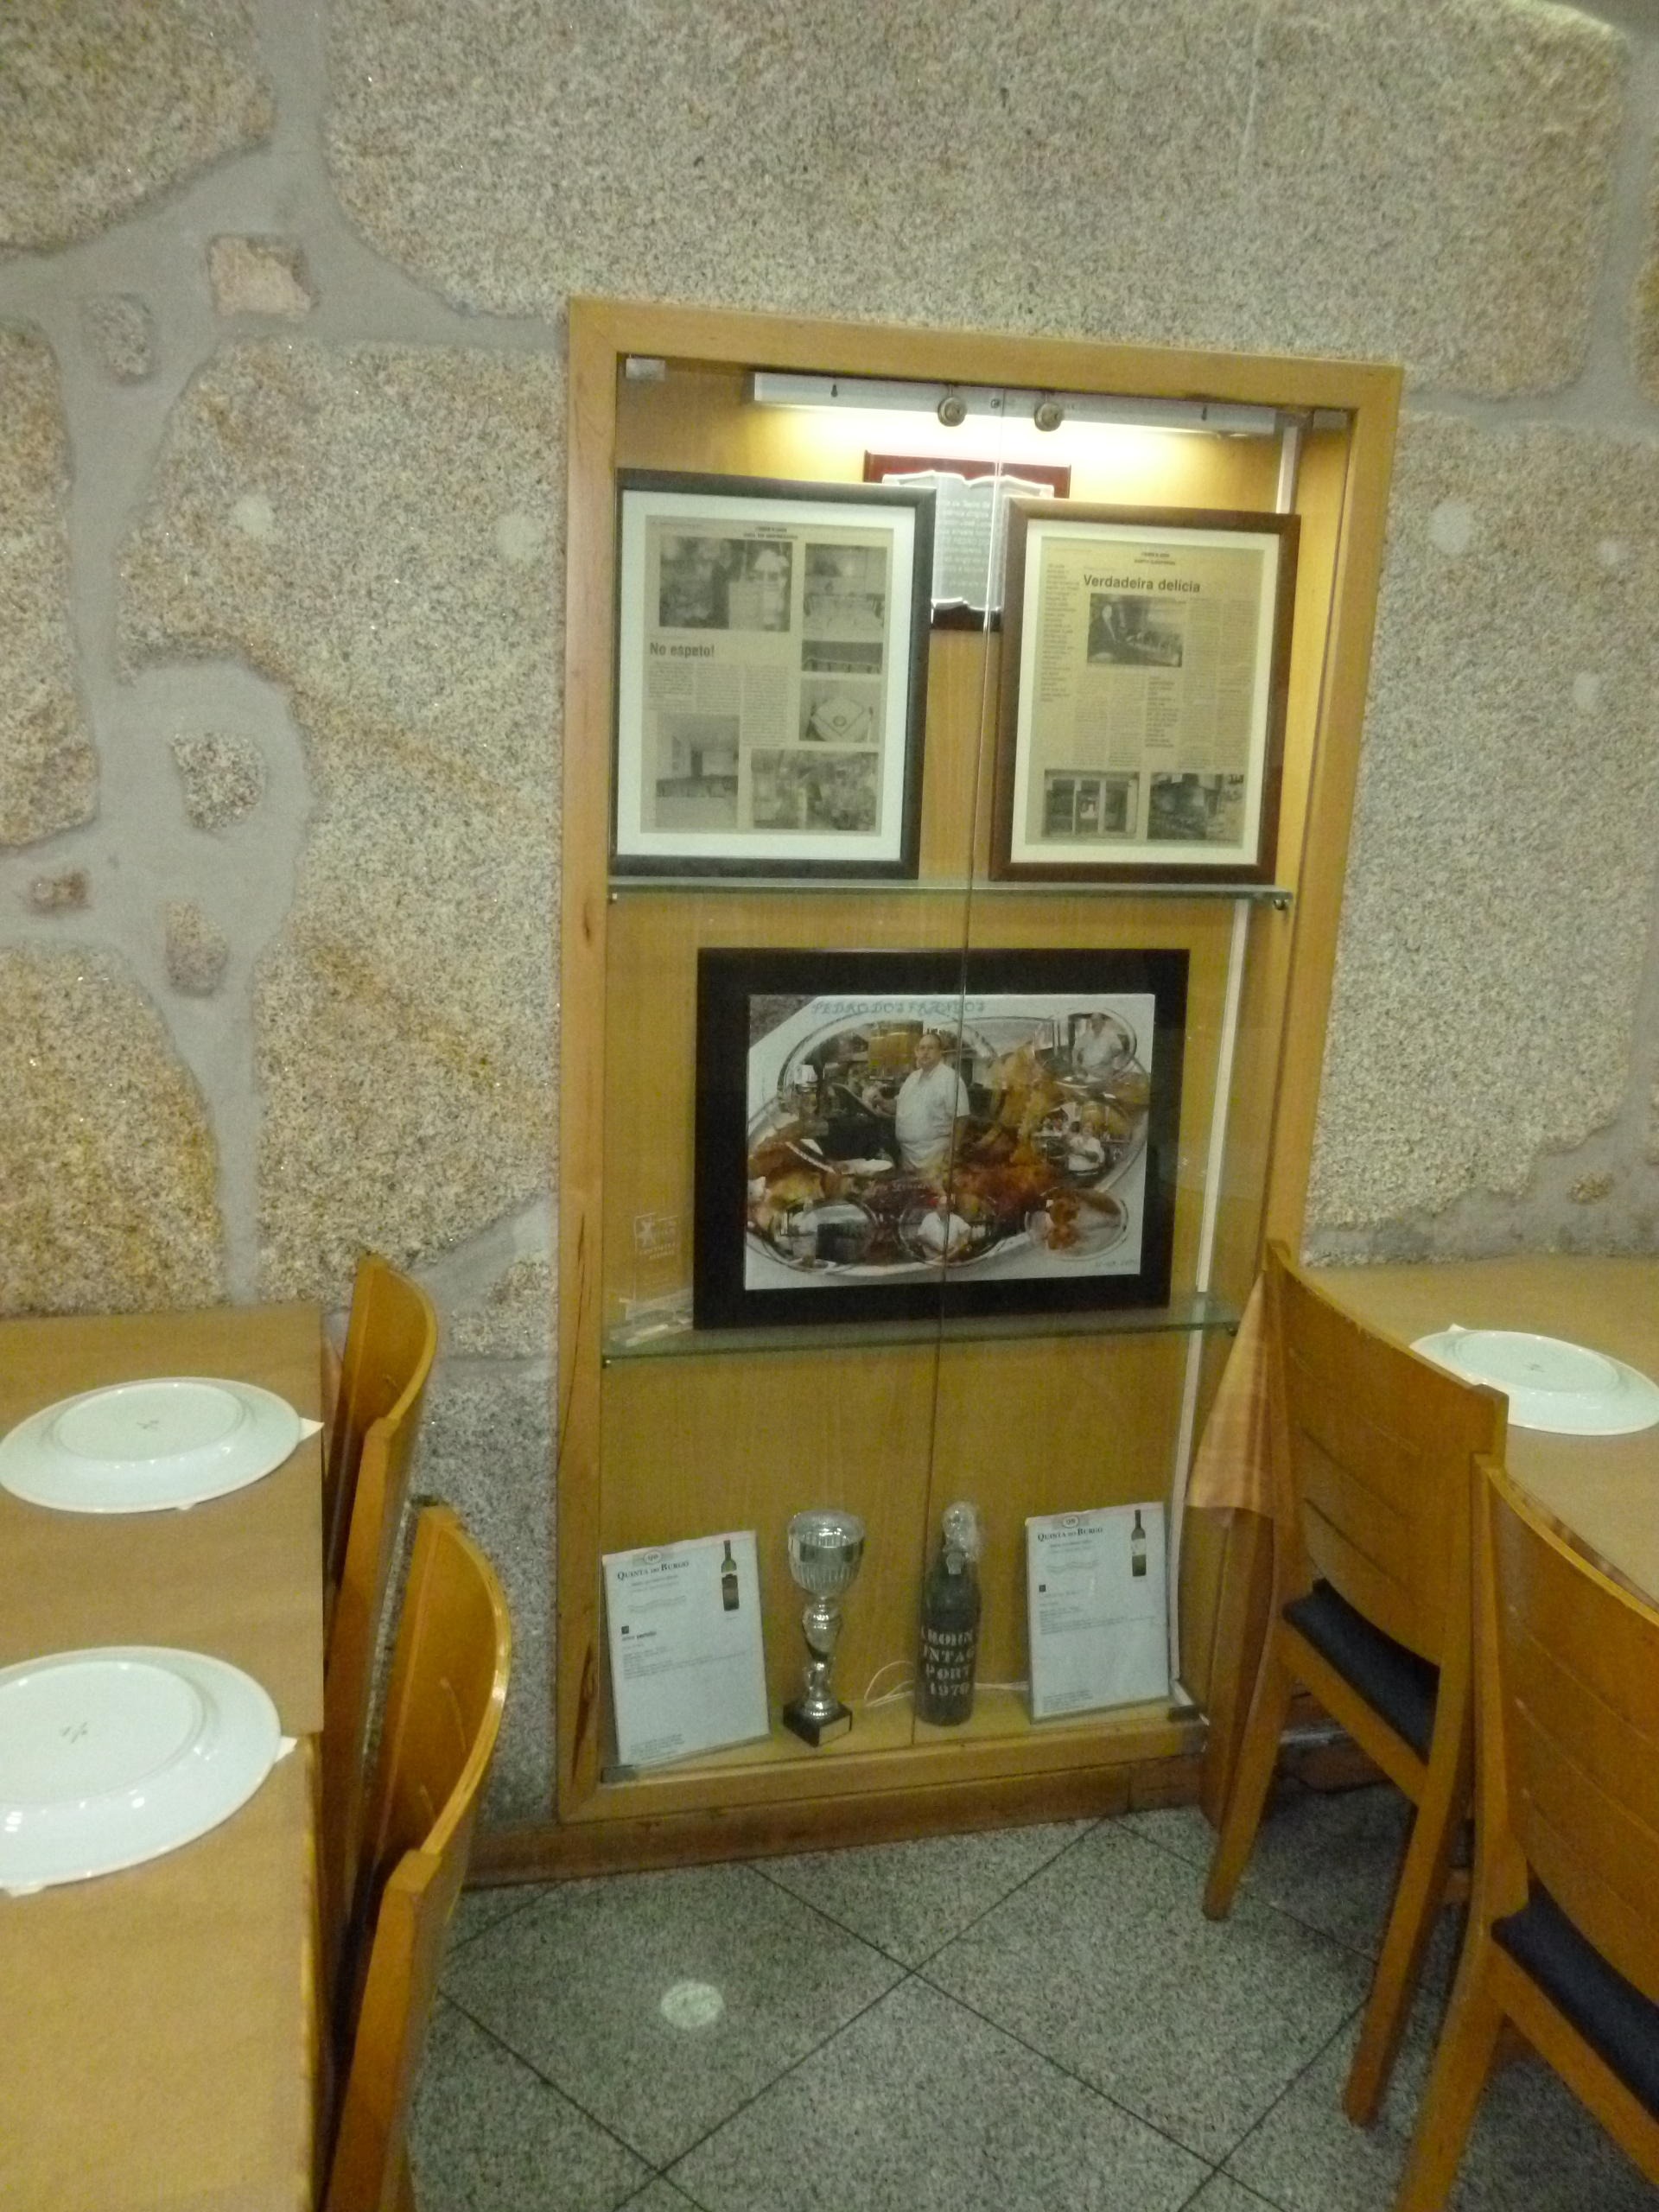 Restaurante Pedro dos Frangos I